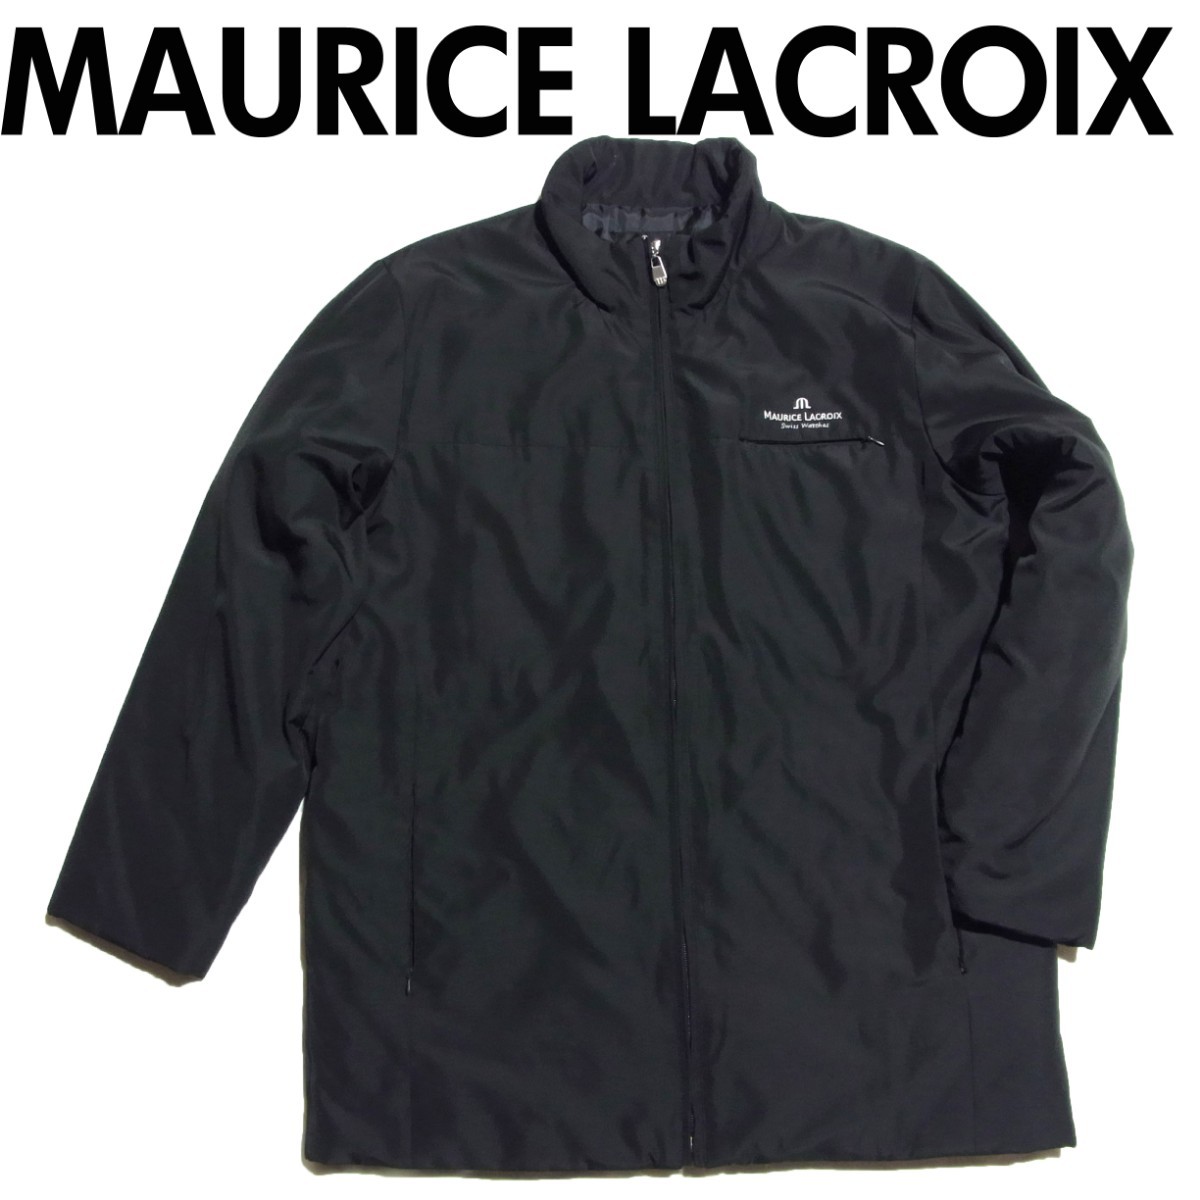 MAURICE LACROIX モーリスラクロア 中綿 コート M 黒 ブラック ノベルティ 非売品